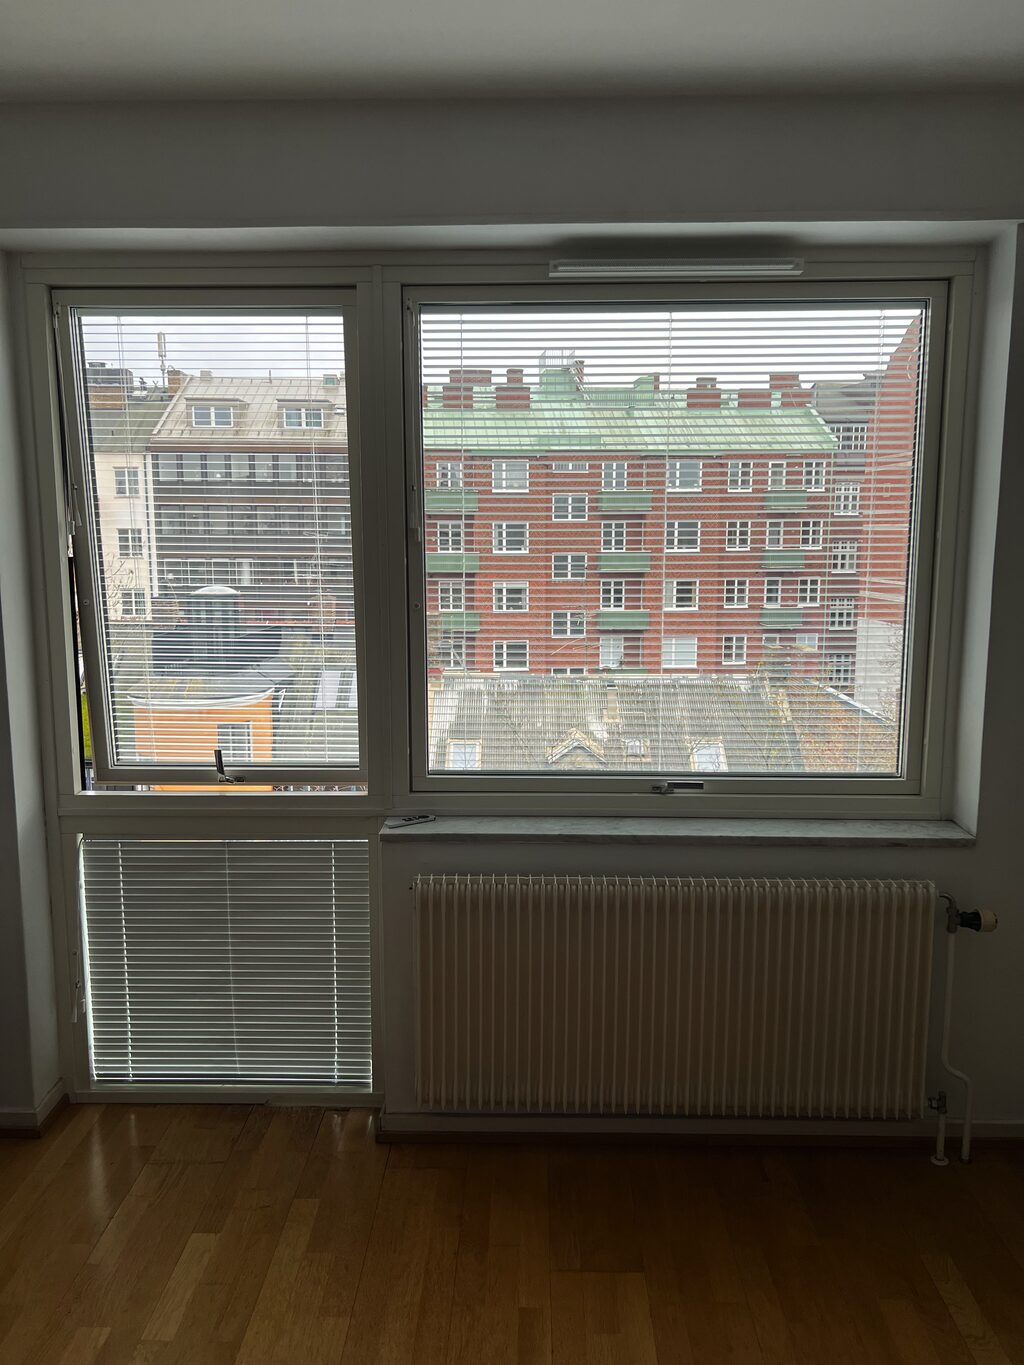 Lägenhetsbyte - Grynbodgatan 16, 211 33 Malmö